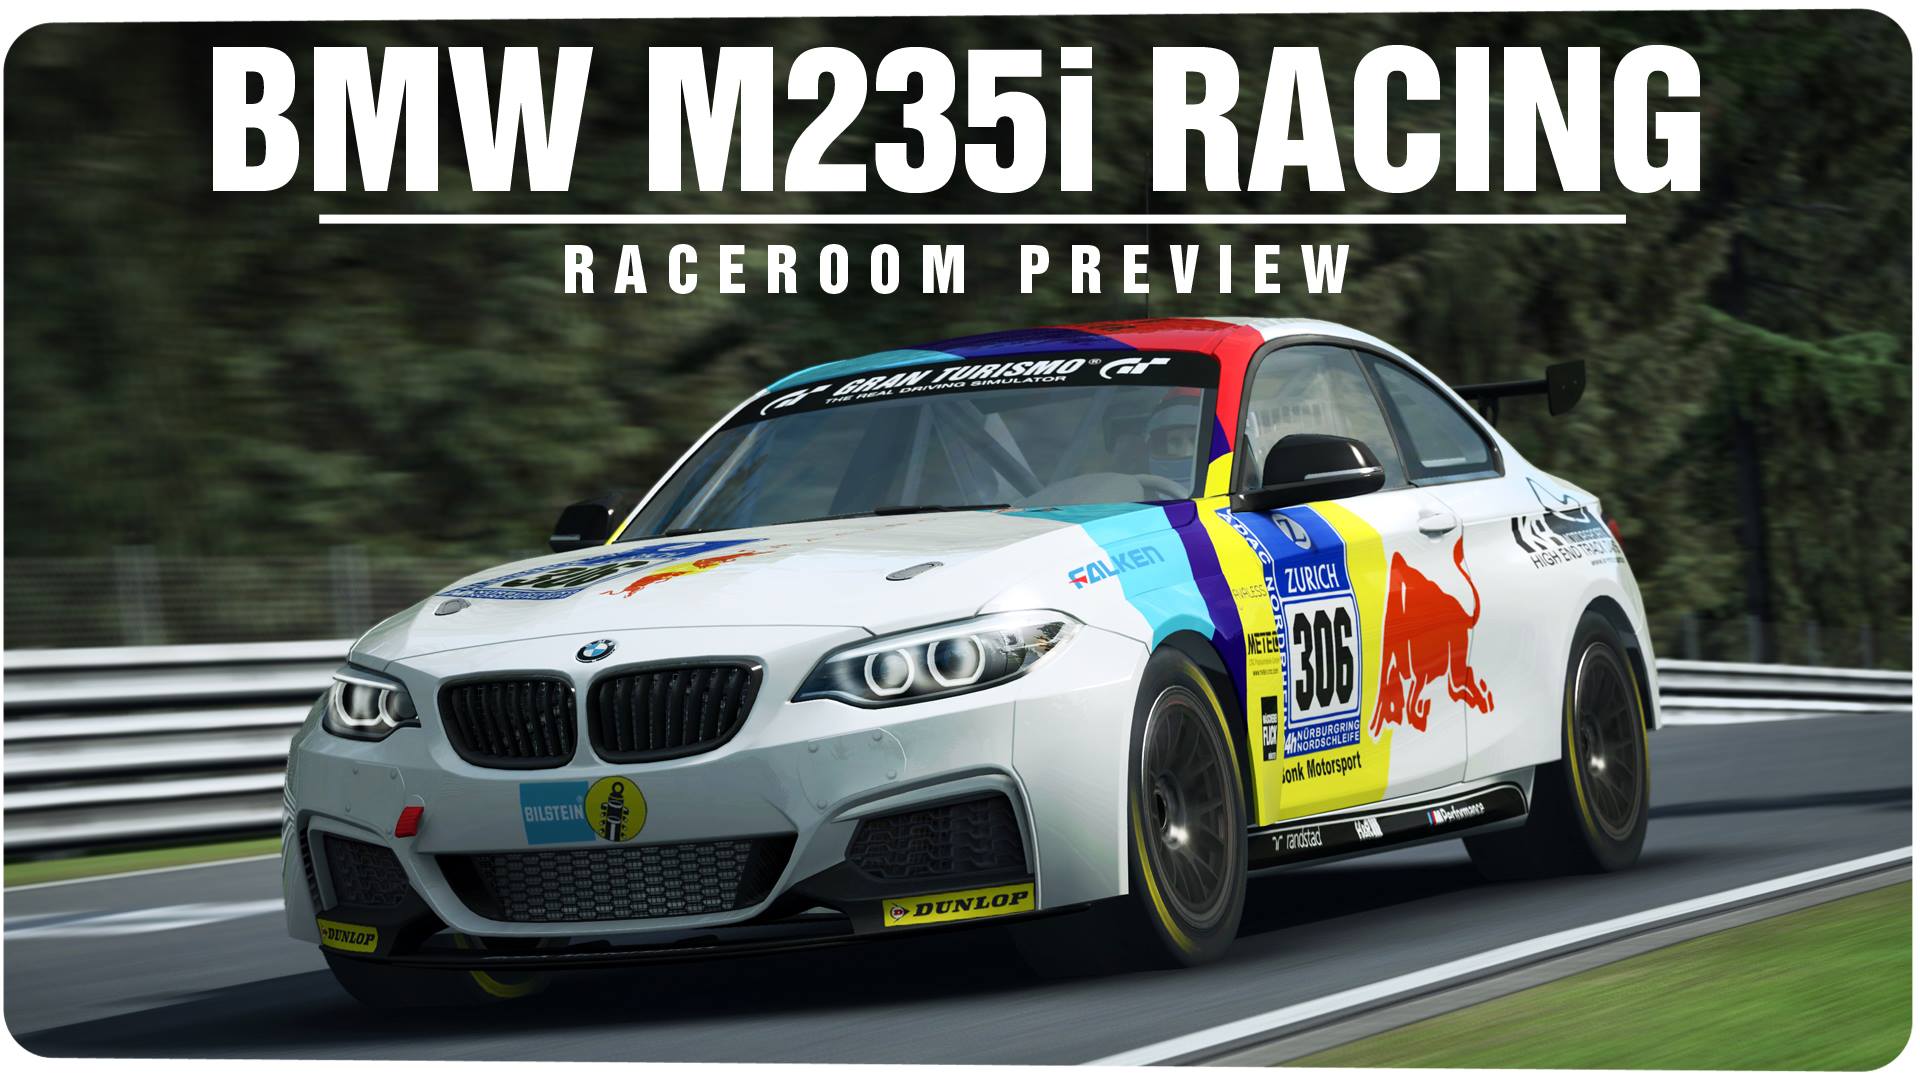 RaceRoom BMW M235i Preview.jpg